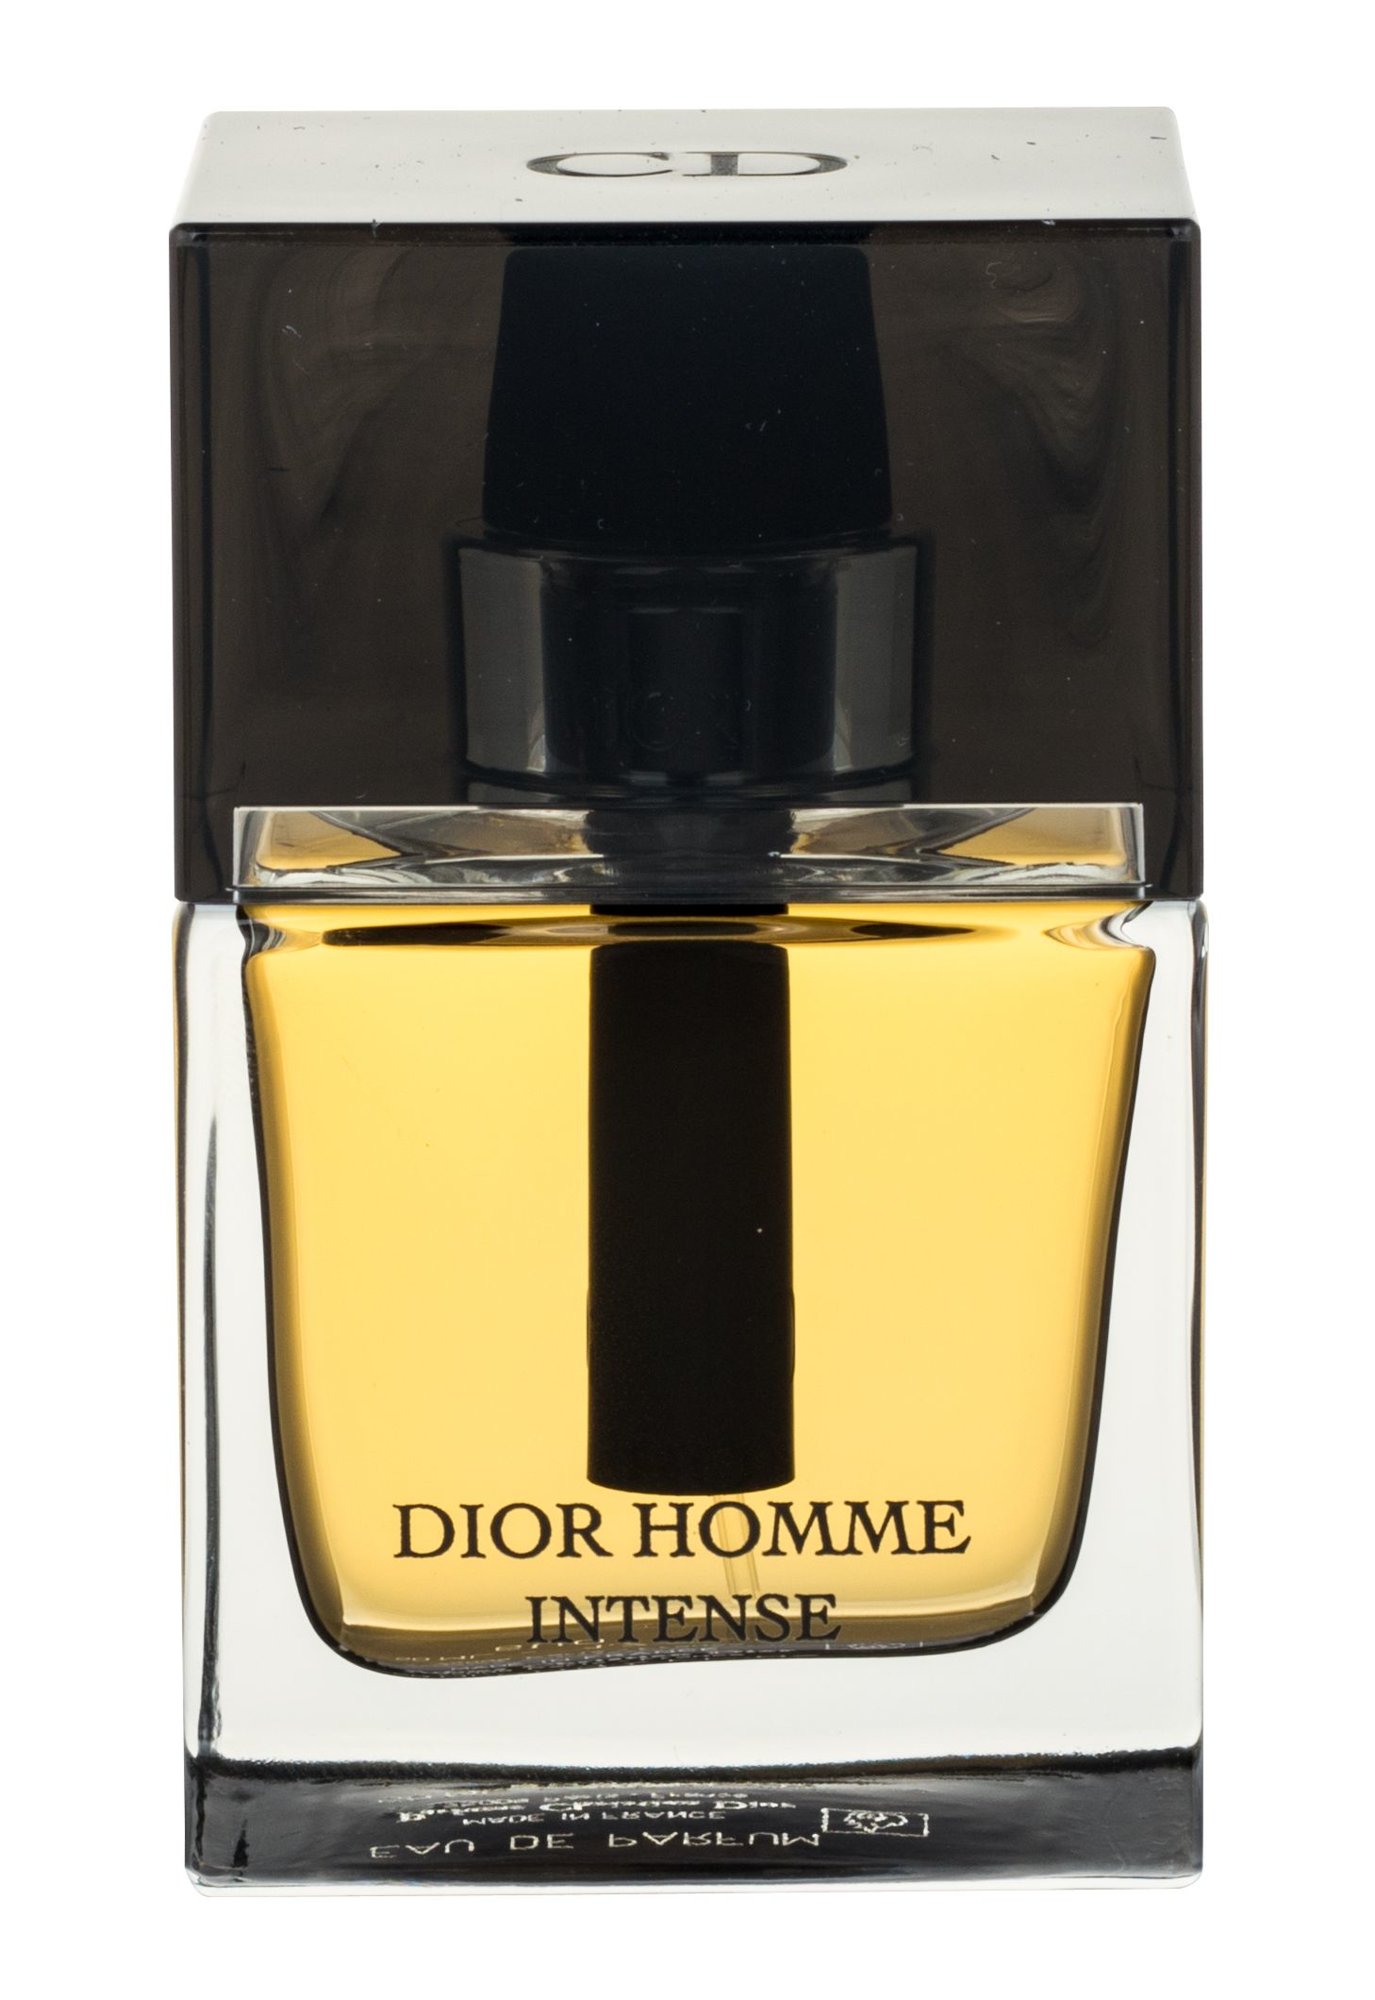 Christian Dior Homme Intense 50ml Kvepalai Vyrams EDP reedice 2011 (Pažeista pakuotė)